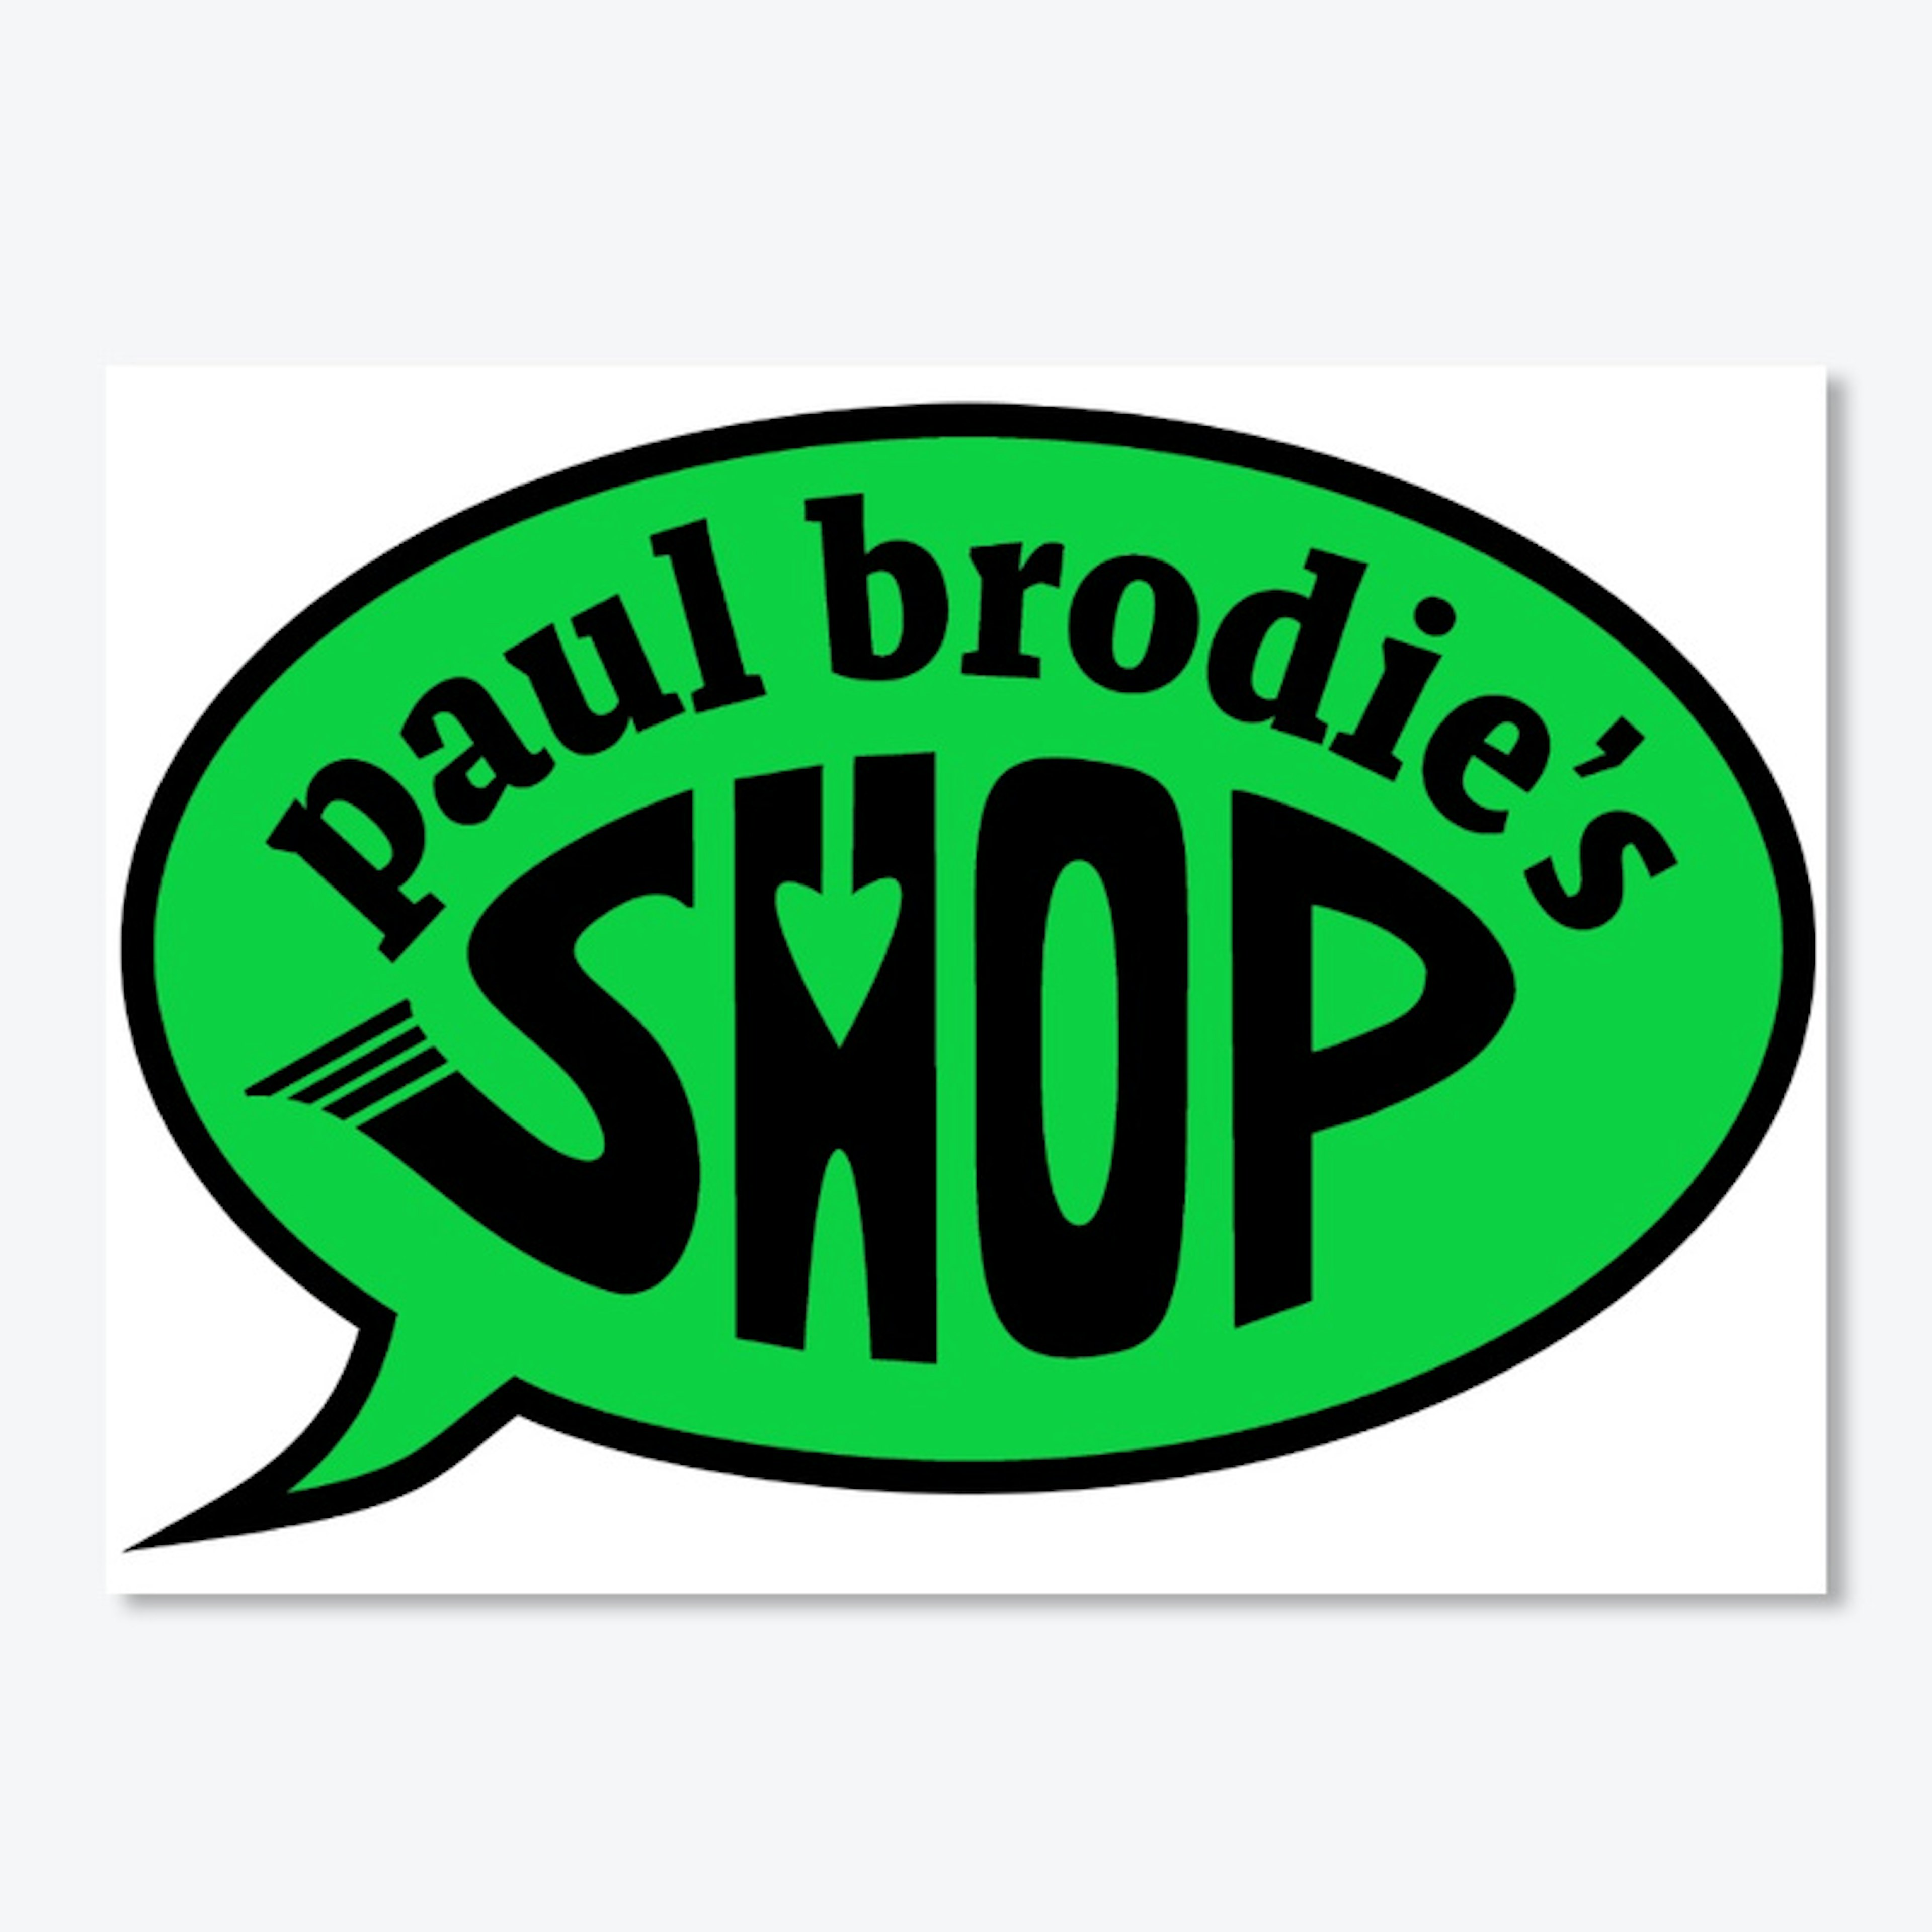 Paul Brodie's Shop